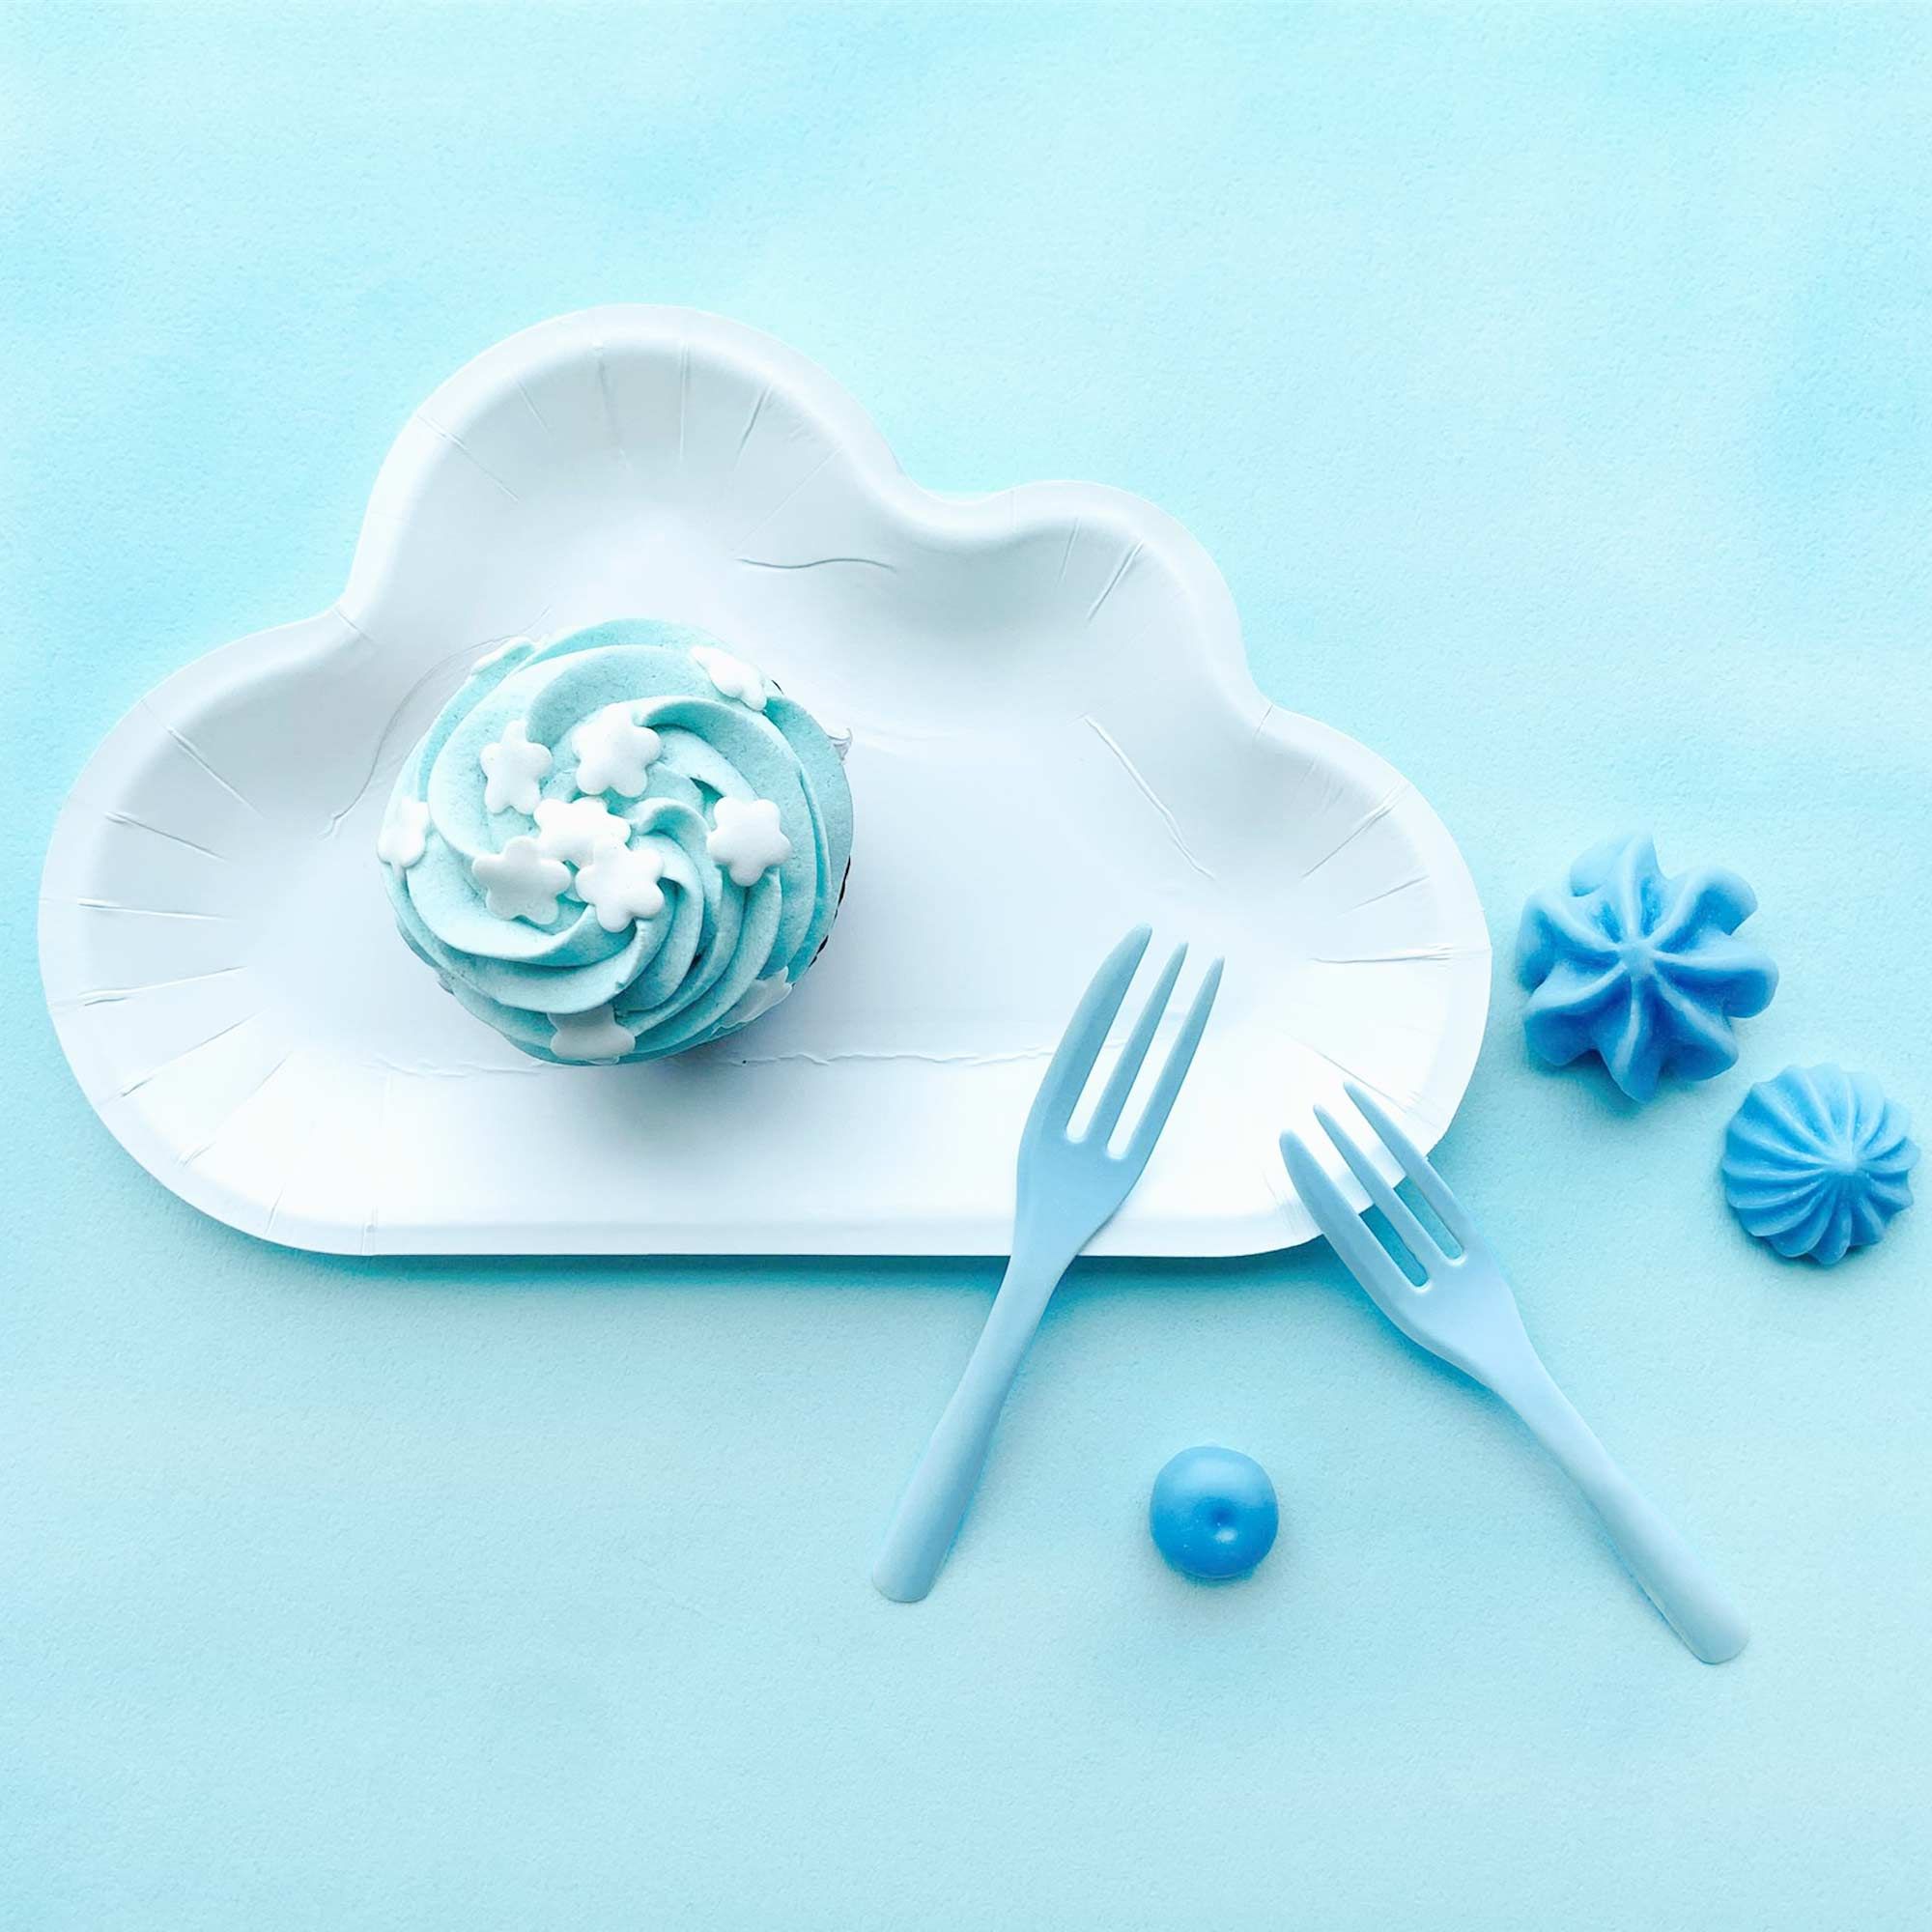 白い雲のデザインのプレートとブルーのフレンチケーキフォークで、青空と白い雲の雰囲気を演出します